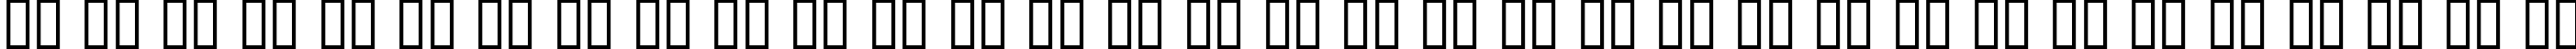 Пример написания русского алфавита шрифтом Dumbledor 3 Rev Italic